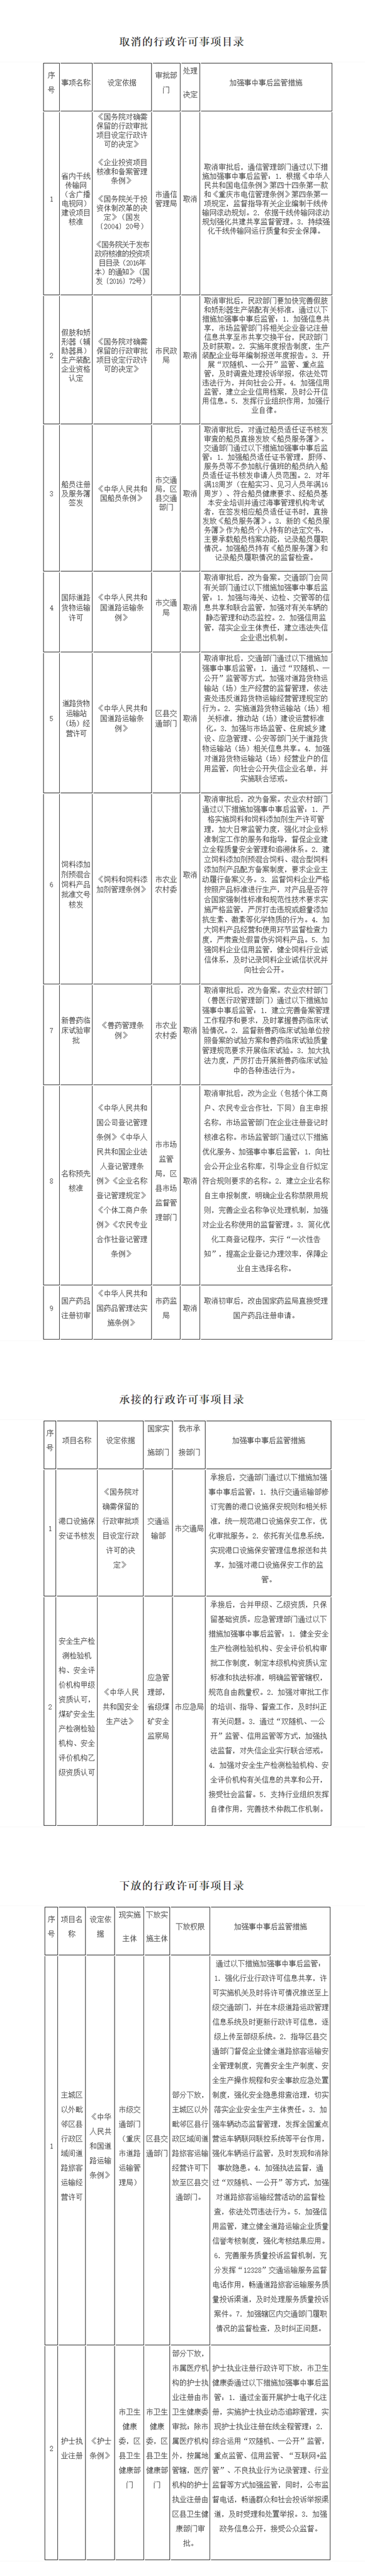 重庆市人民政府关于取消和调整一批行政许可事项的目录(网页截图）.png